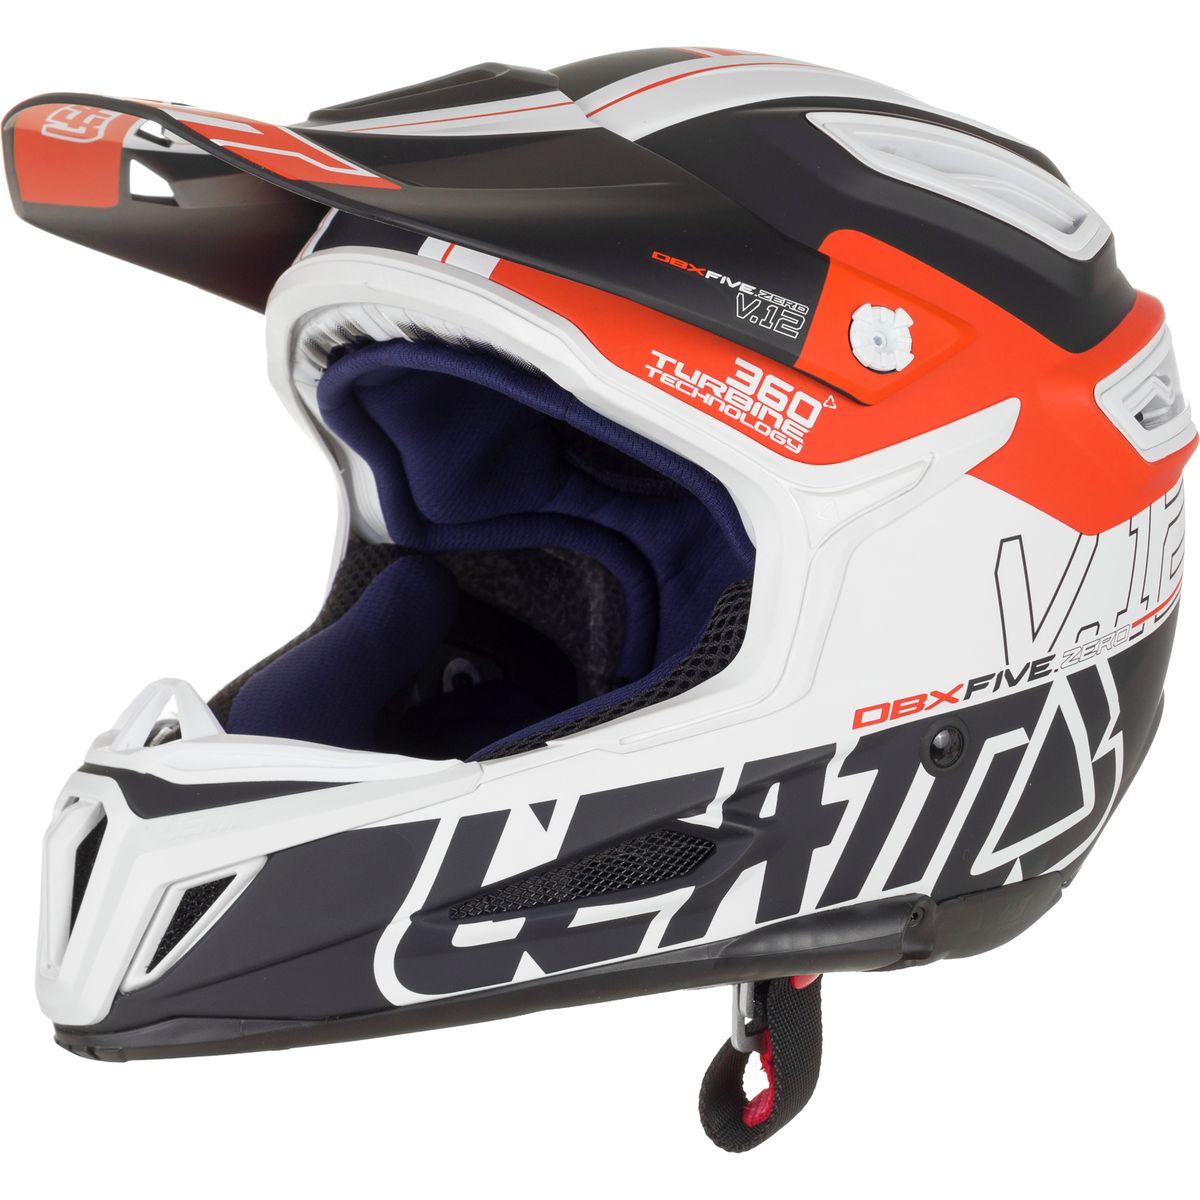 Leatt 5.0 Composite Helmet